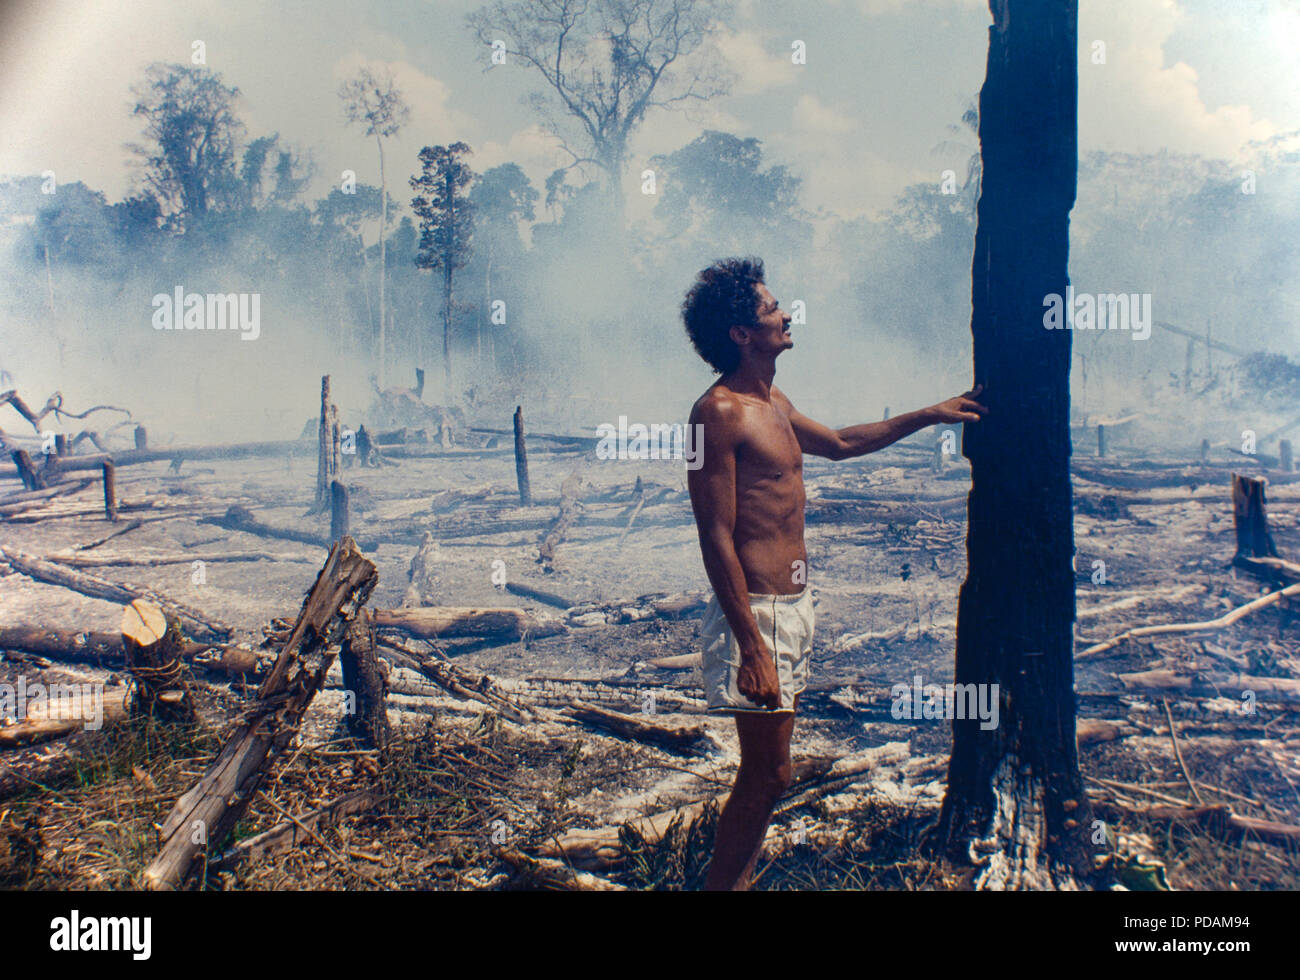 Protokollierung, Amazon, Abholzung, Hieb-und-verbrannten Flecken der Wald am Morgen Zustand, Brasilien. Stockfoto